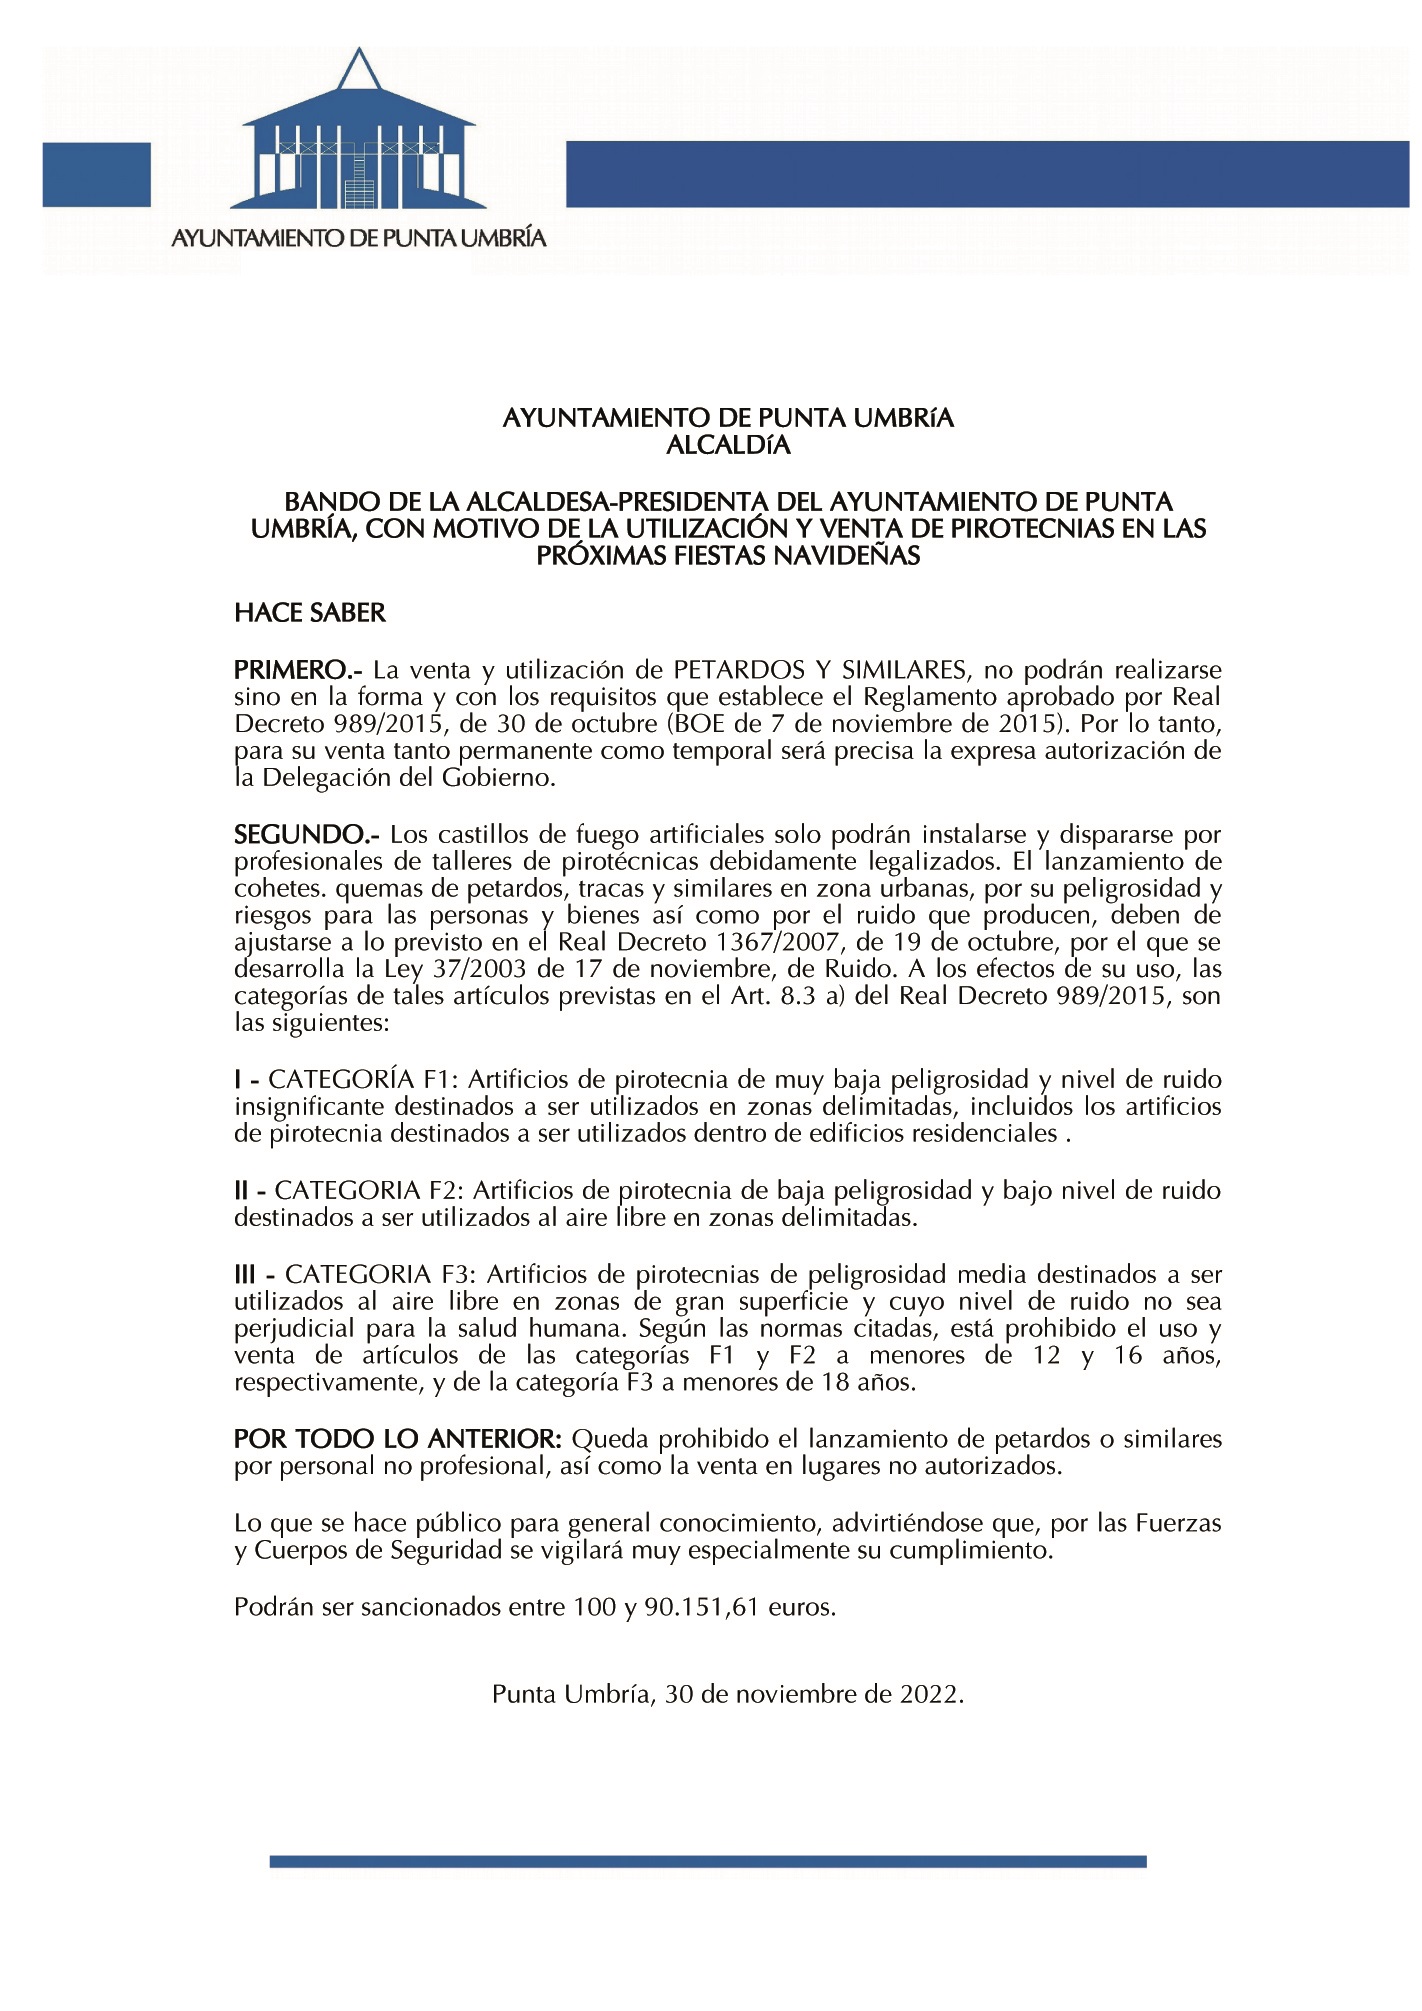 El Ayuntamiento de Punta Umbría limita a profesionales la venta y el lanzamiento de productos pirotécnicos